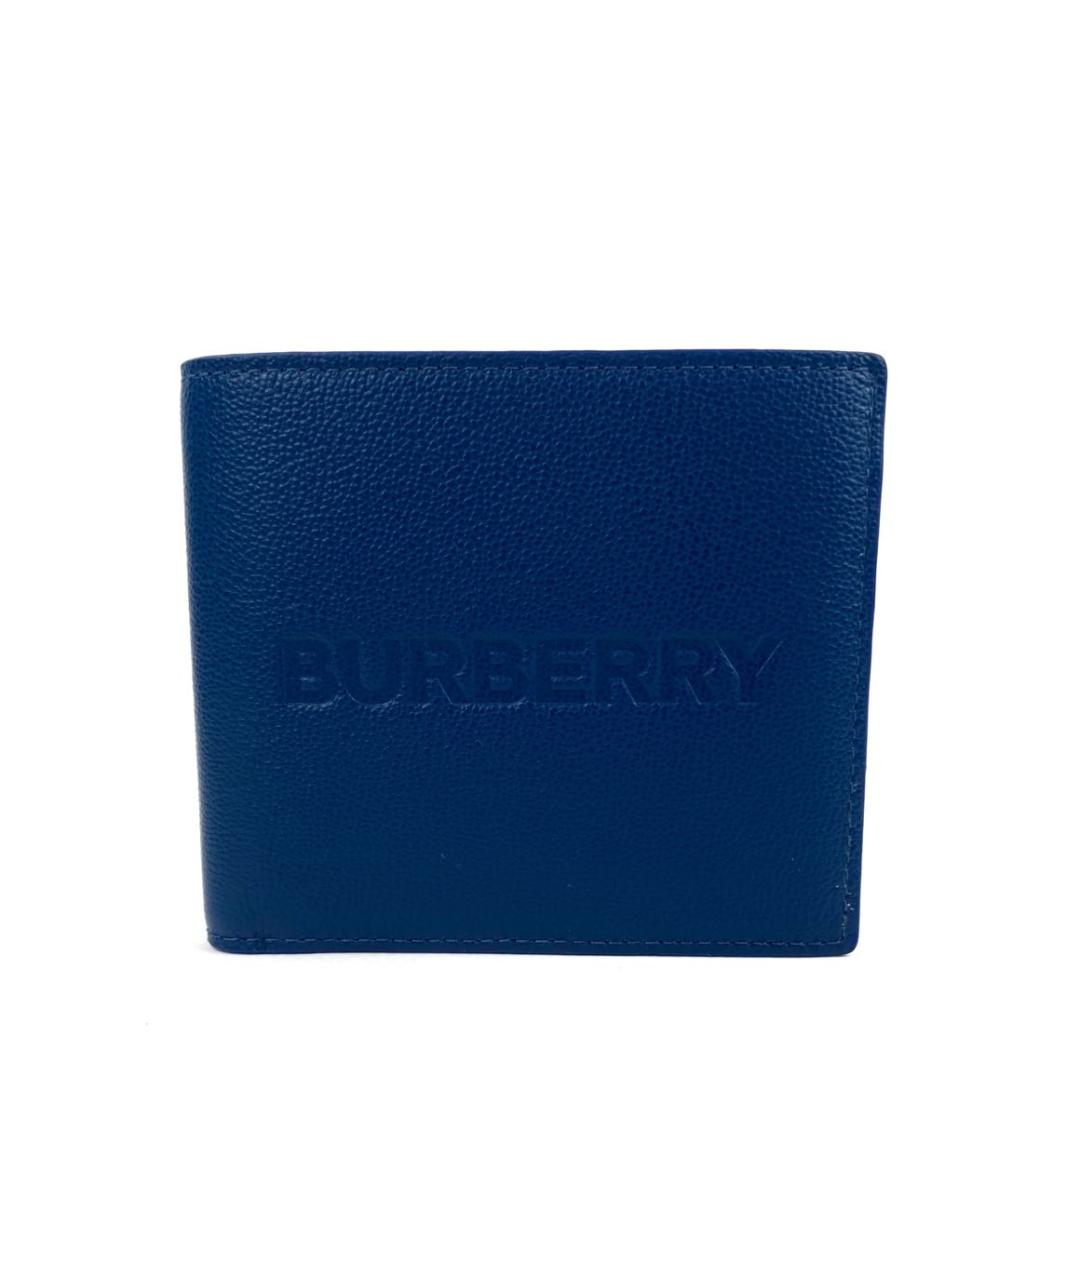 BURBERRY Синий кожаный кошелек, фото 1